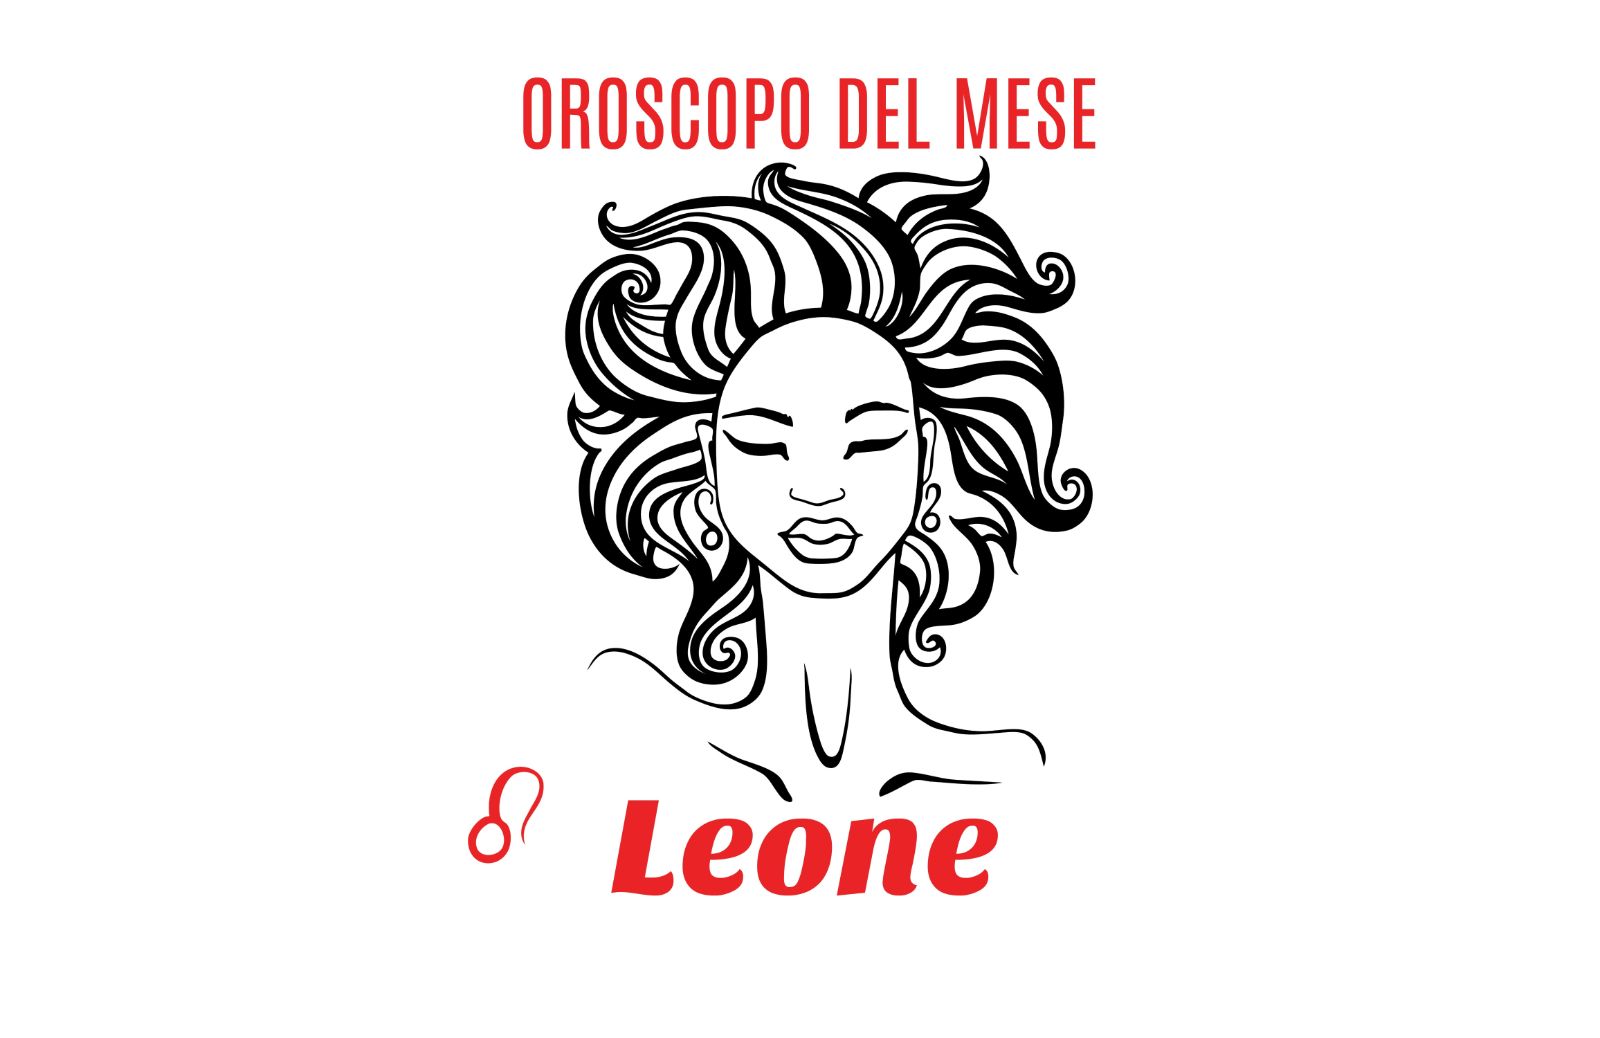 Oroscopo del mese: Leone - maggio 2020